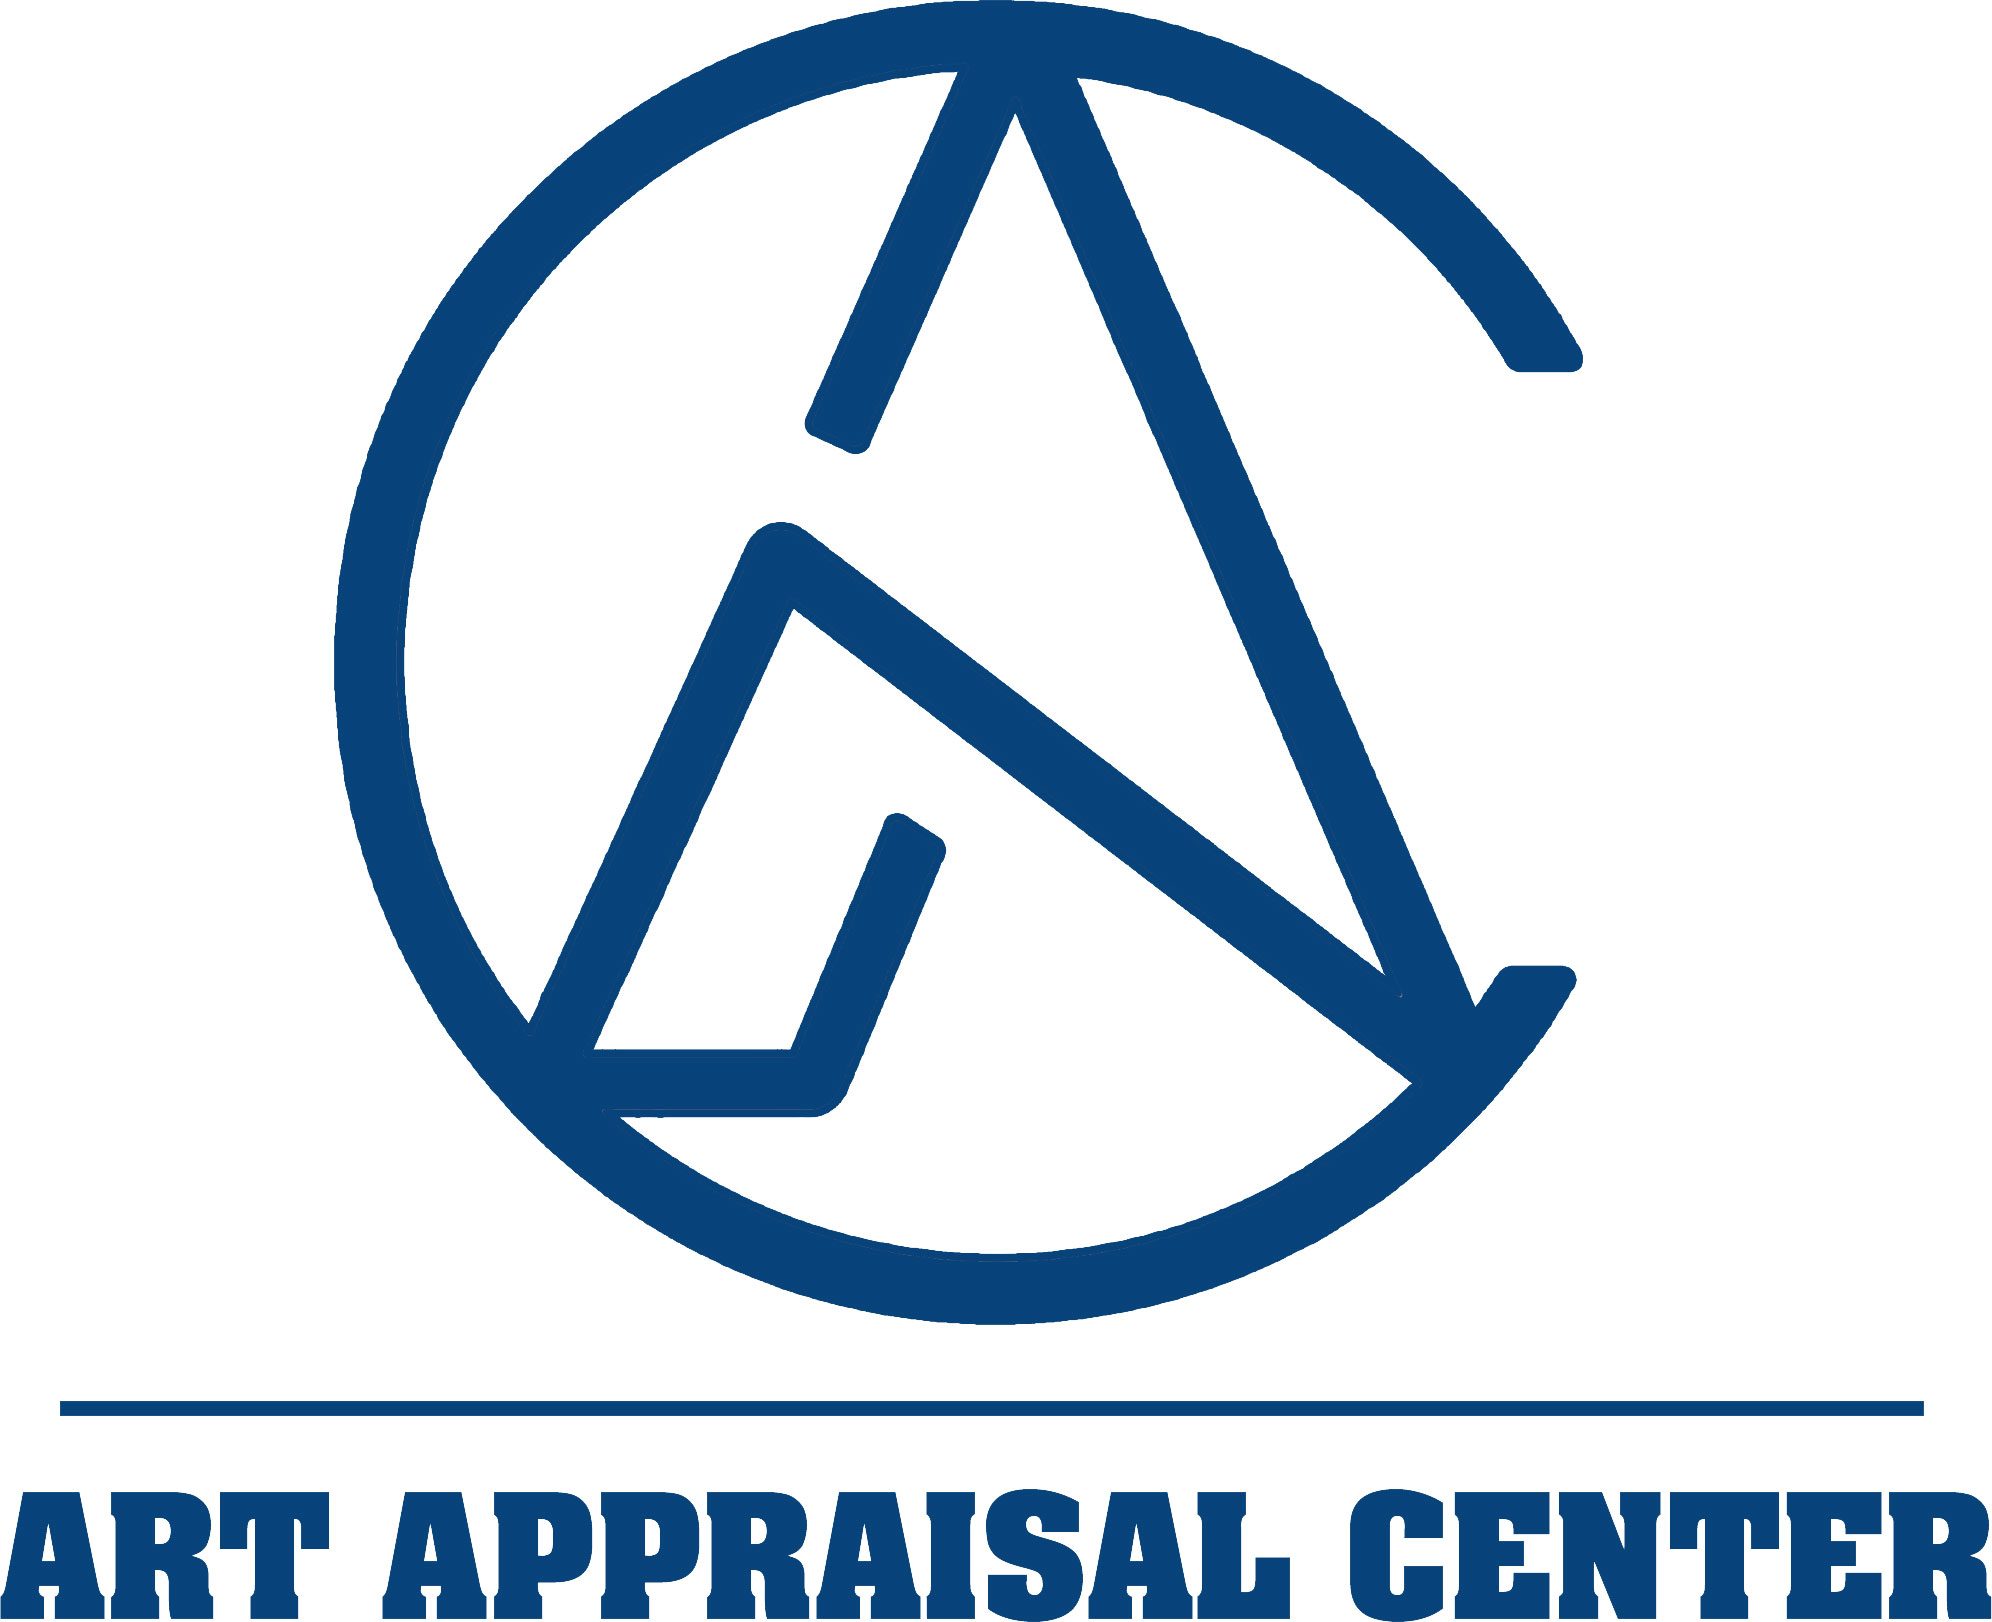 Art Appraisal Center